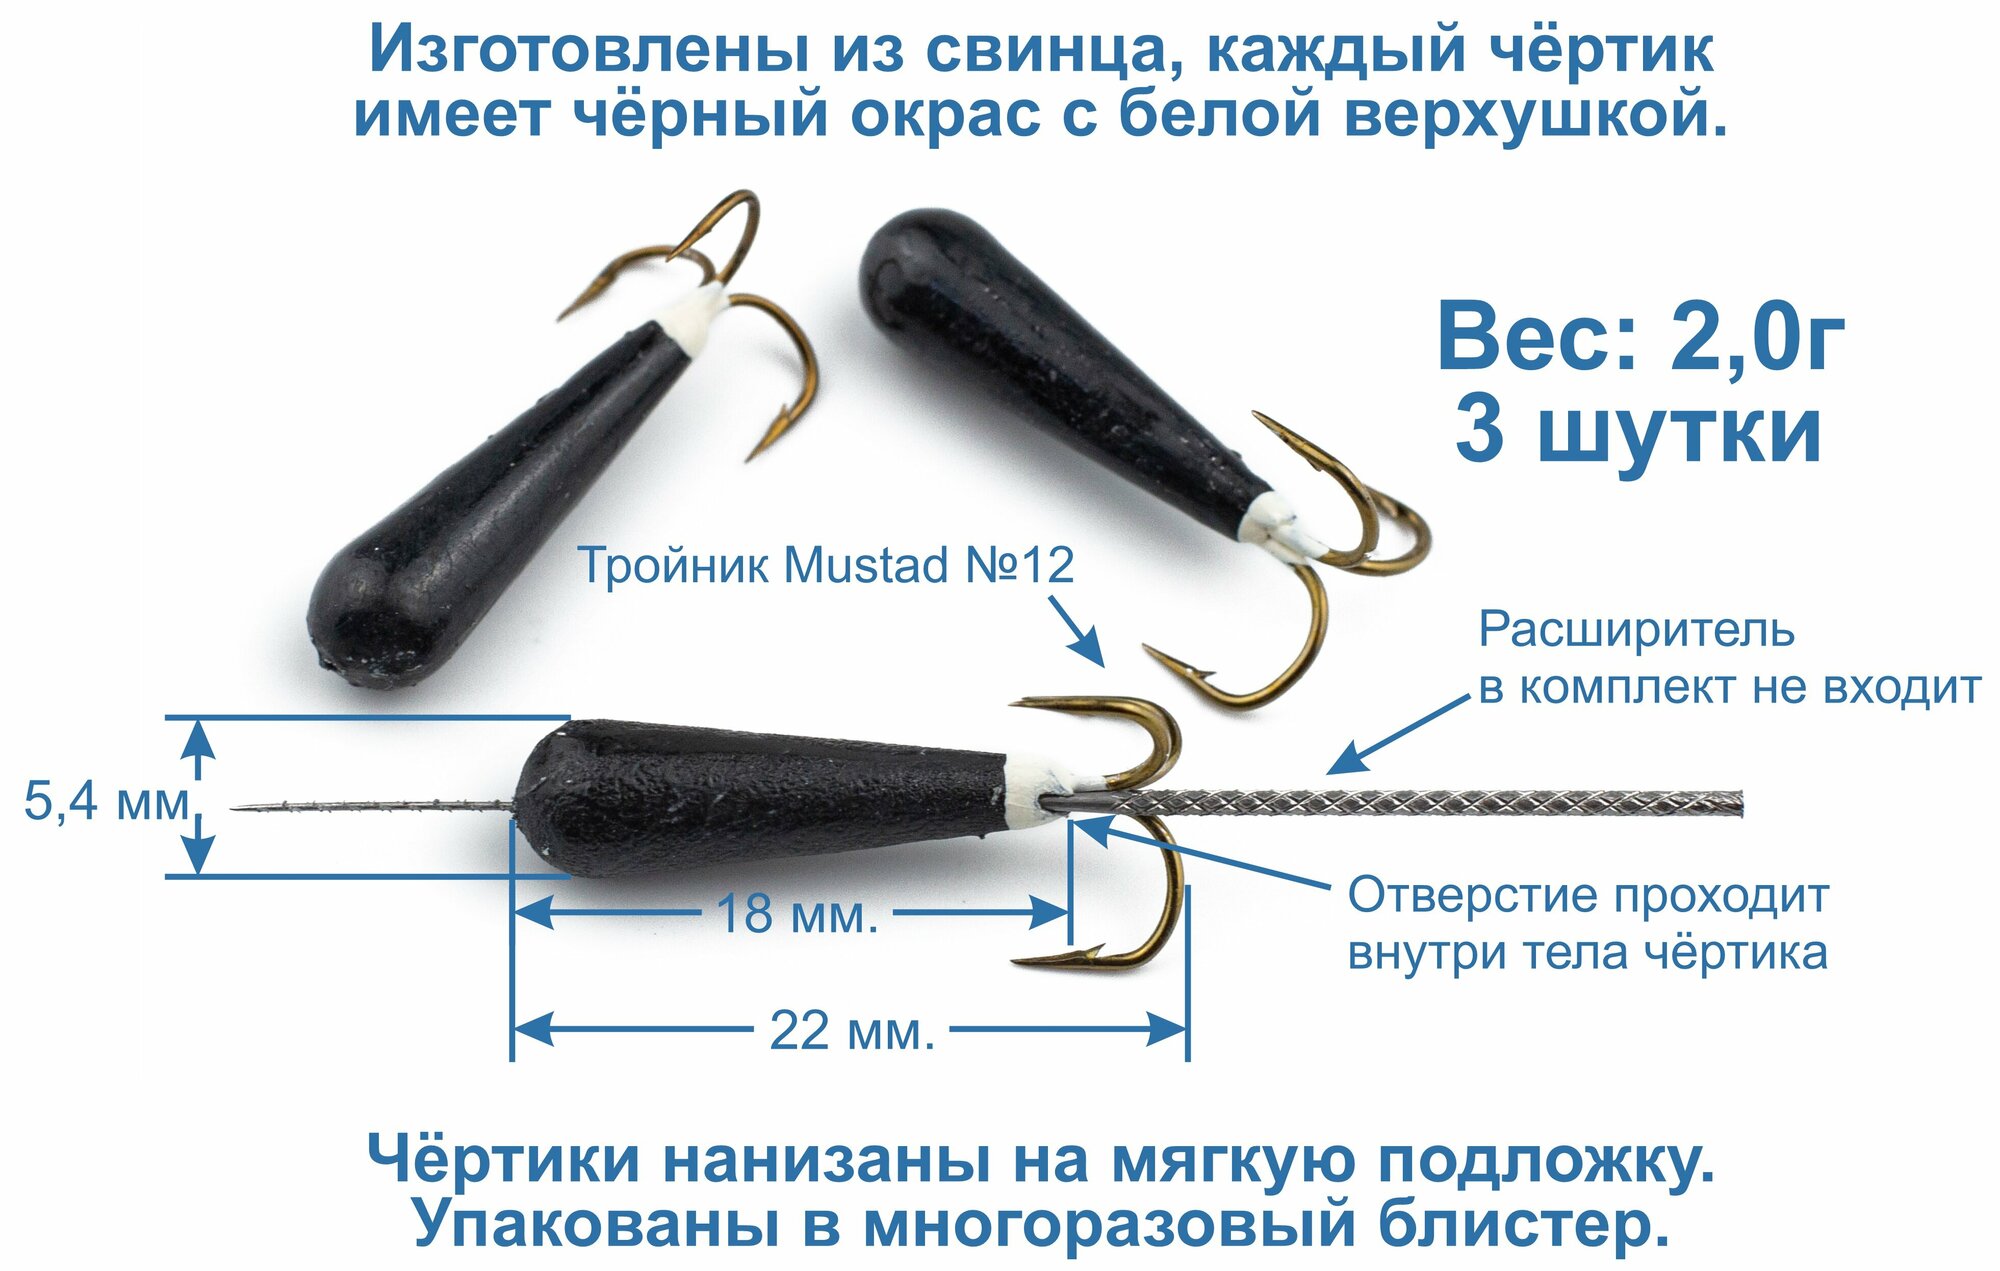 Мормышка - Чертик "Паденка" 2,0г. 3 штуки, со сквозным отверстием